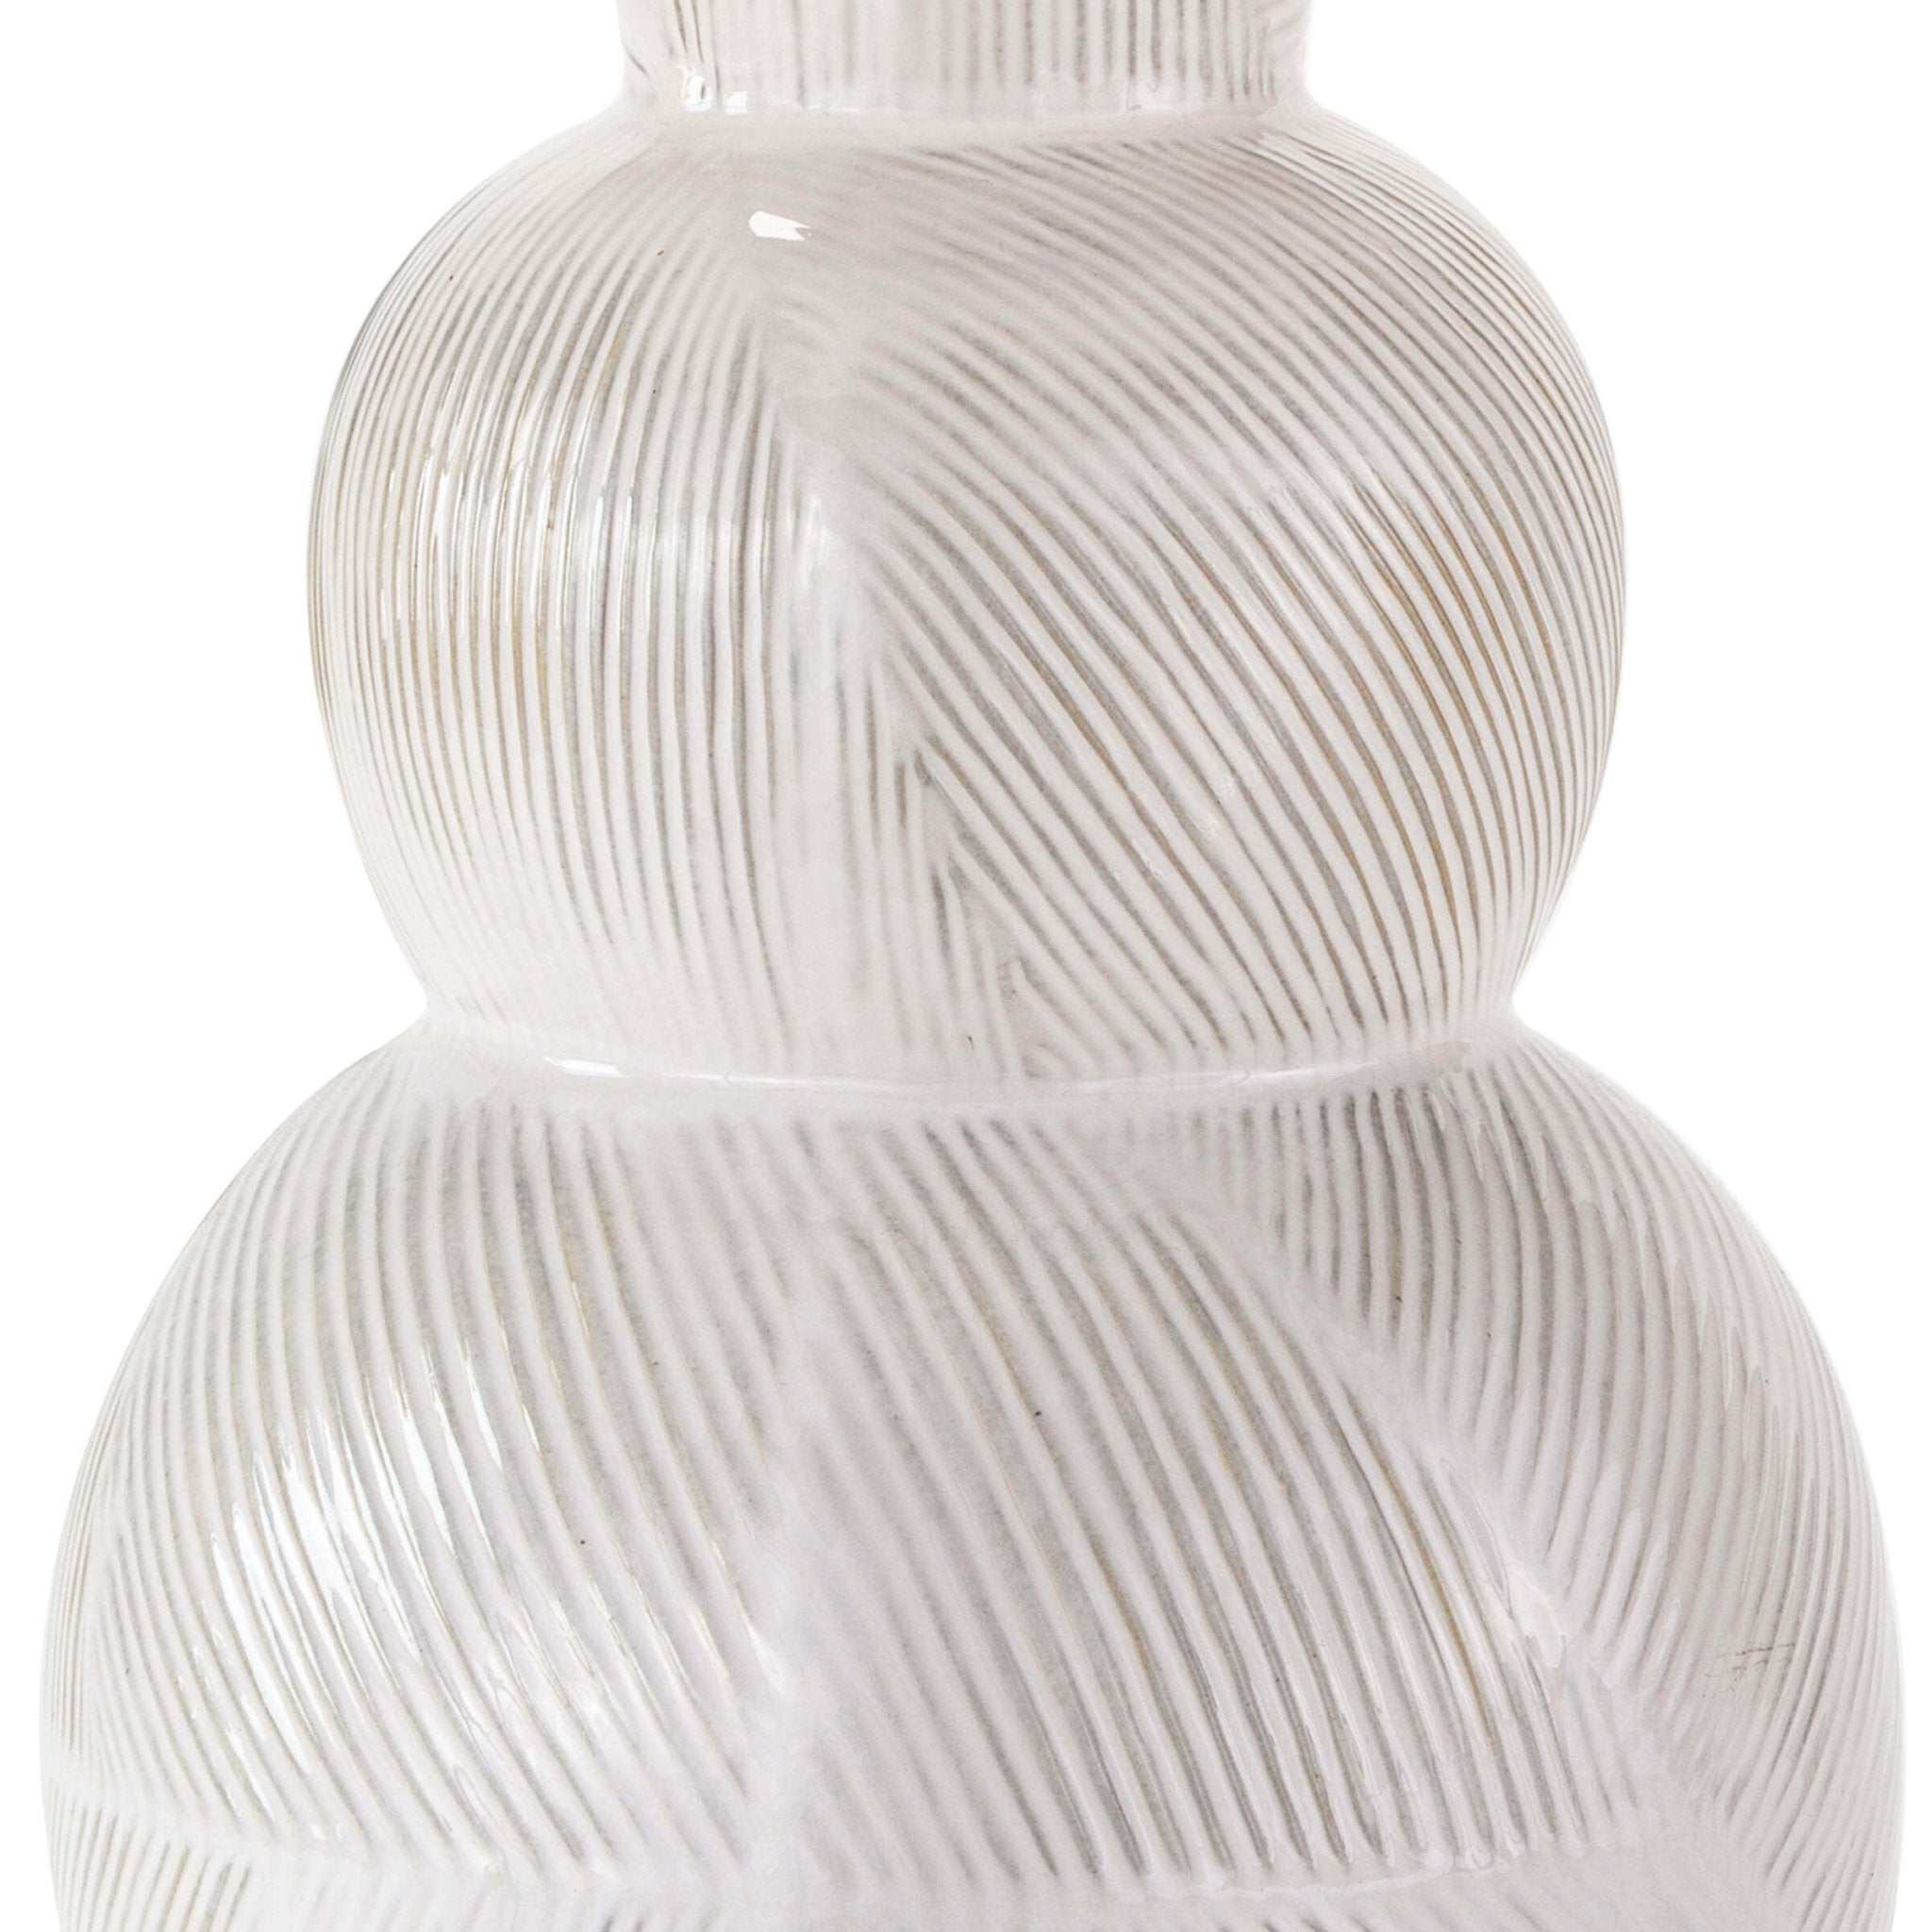 Leafy Artichoke Off-White Ceramic Accent Table Lamp